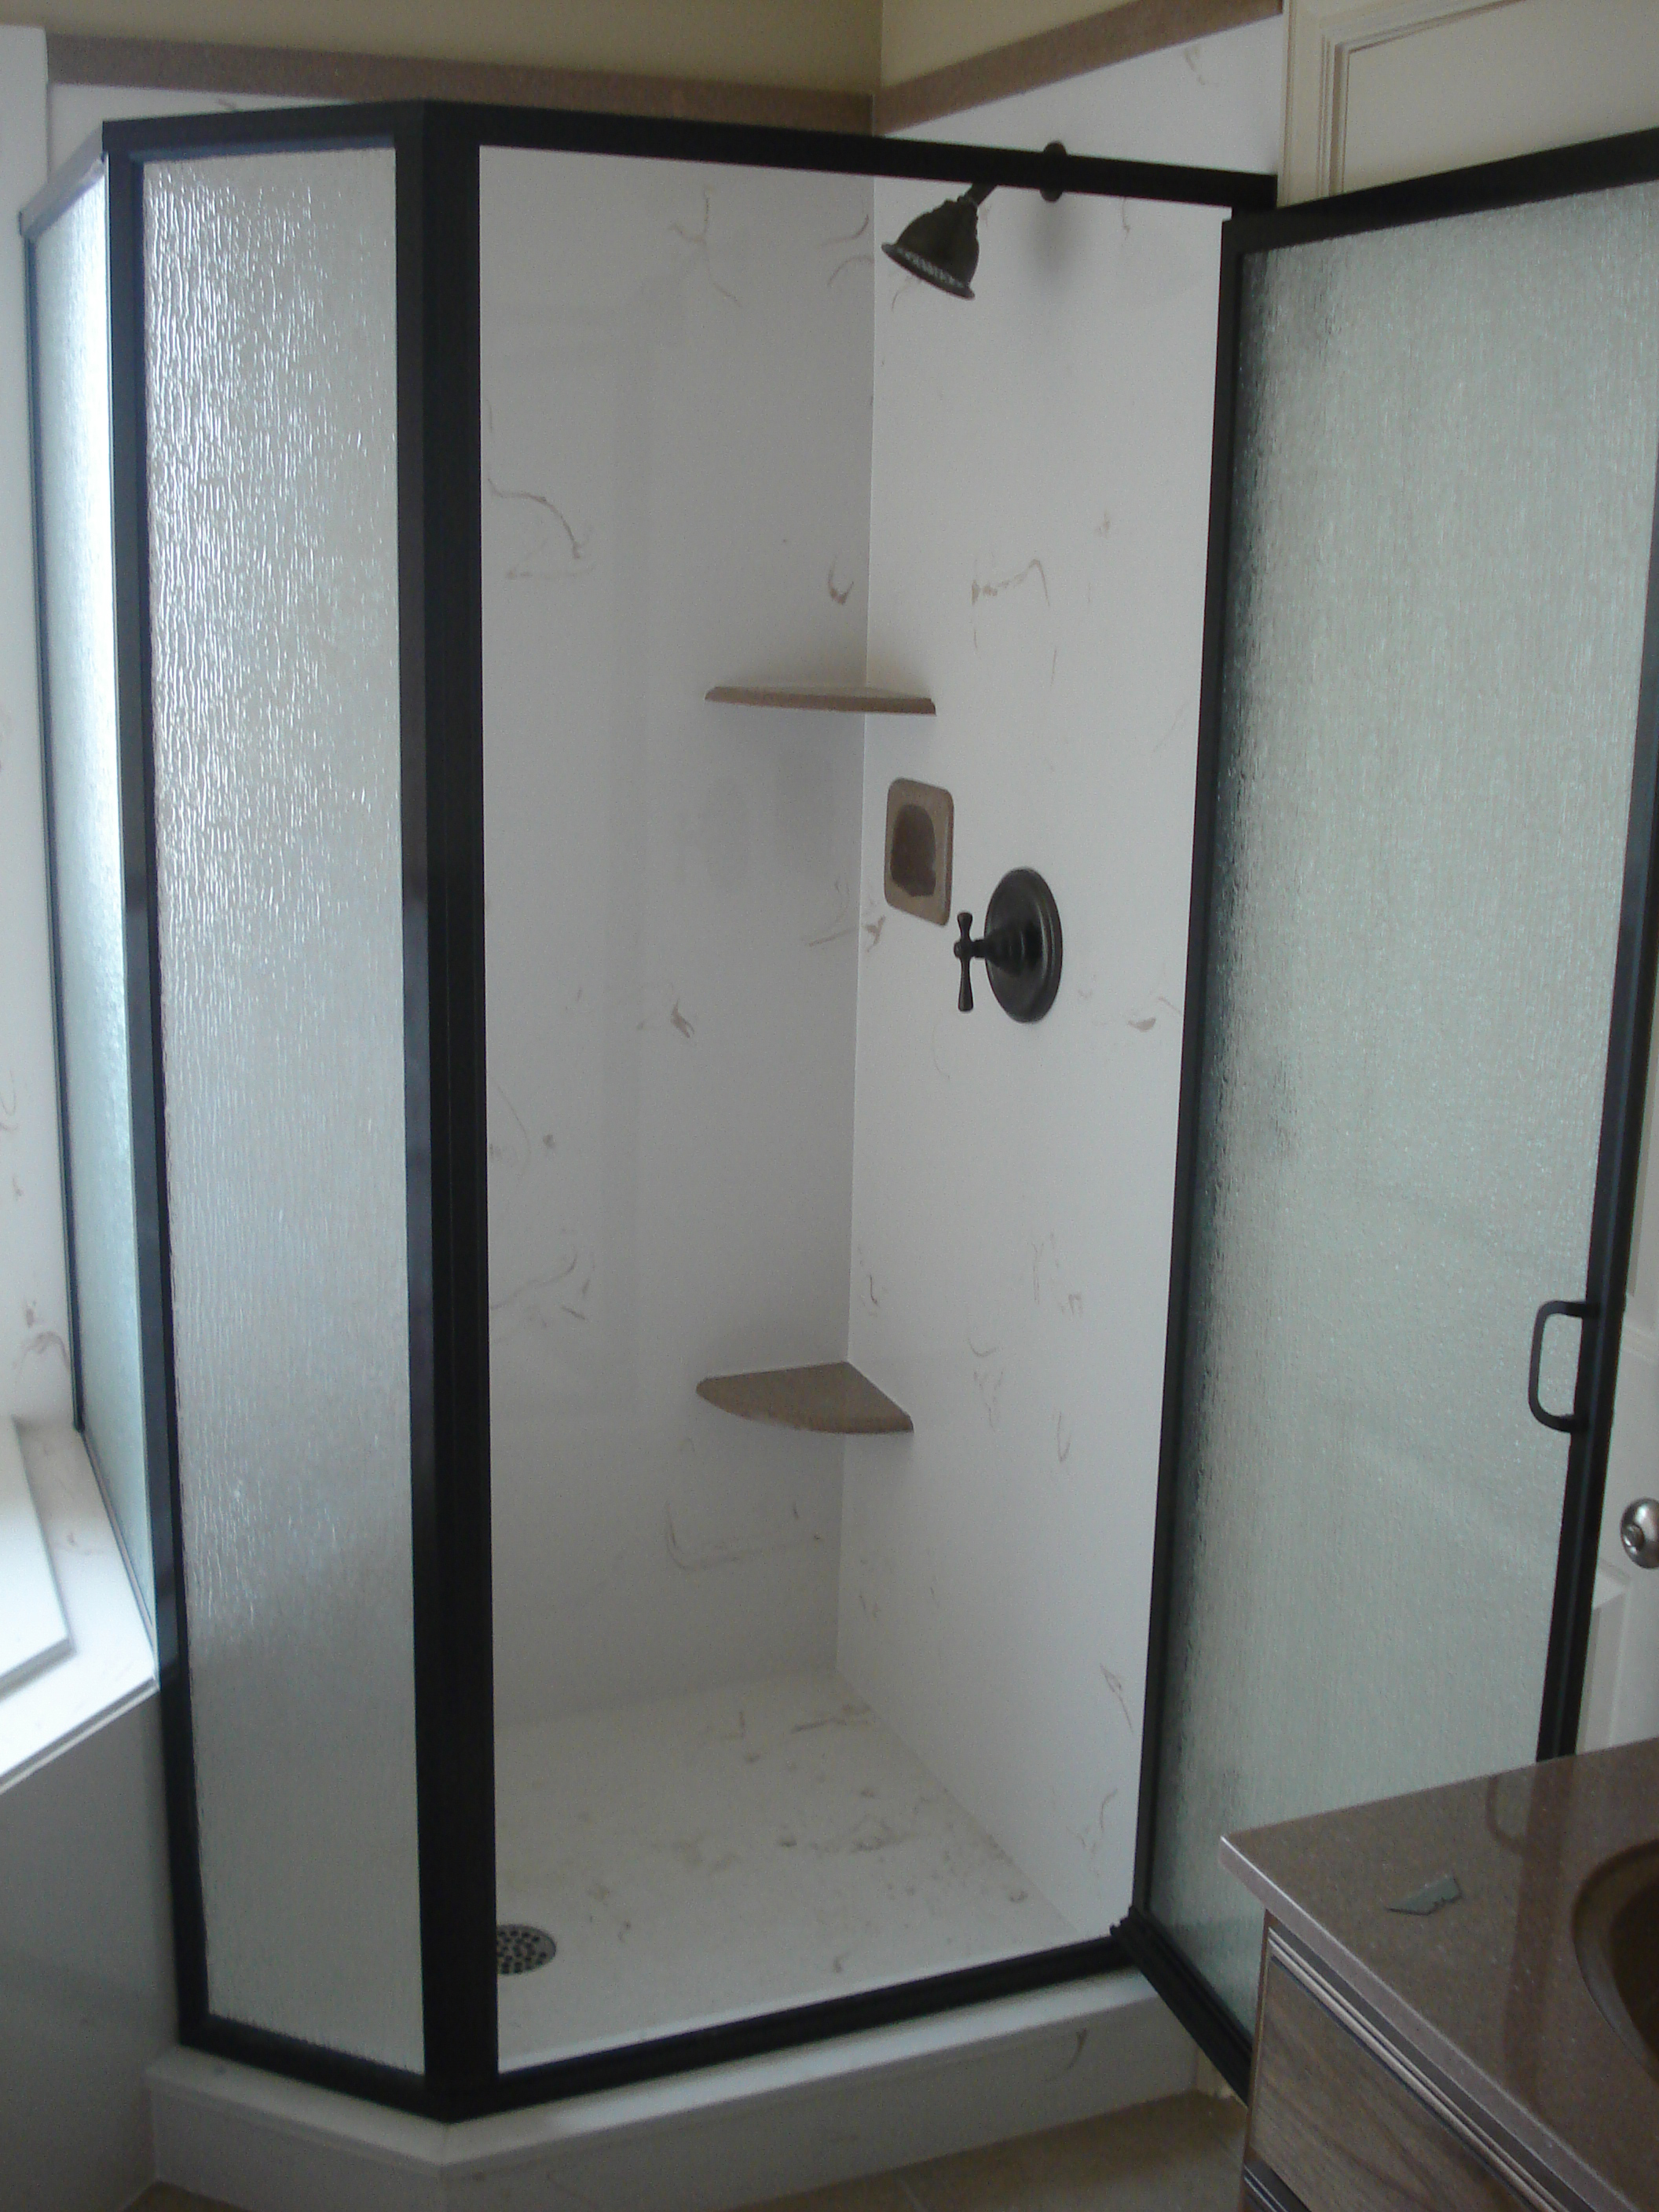 Framed Shower Enclosure